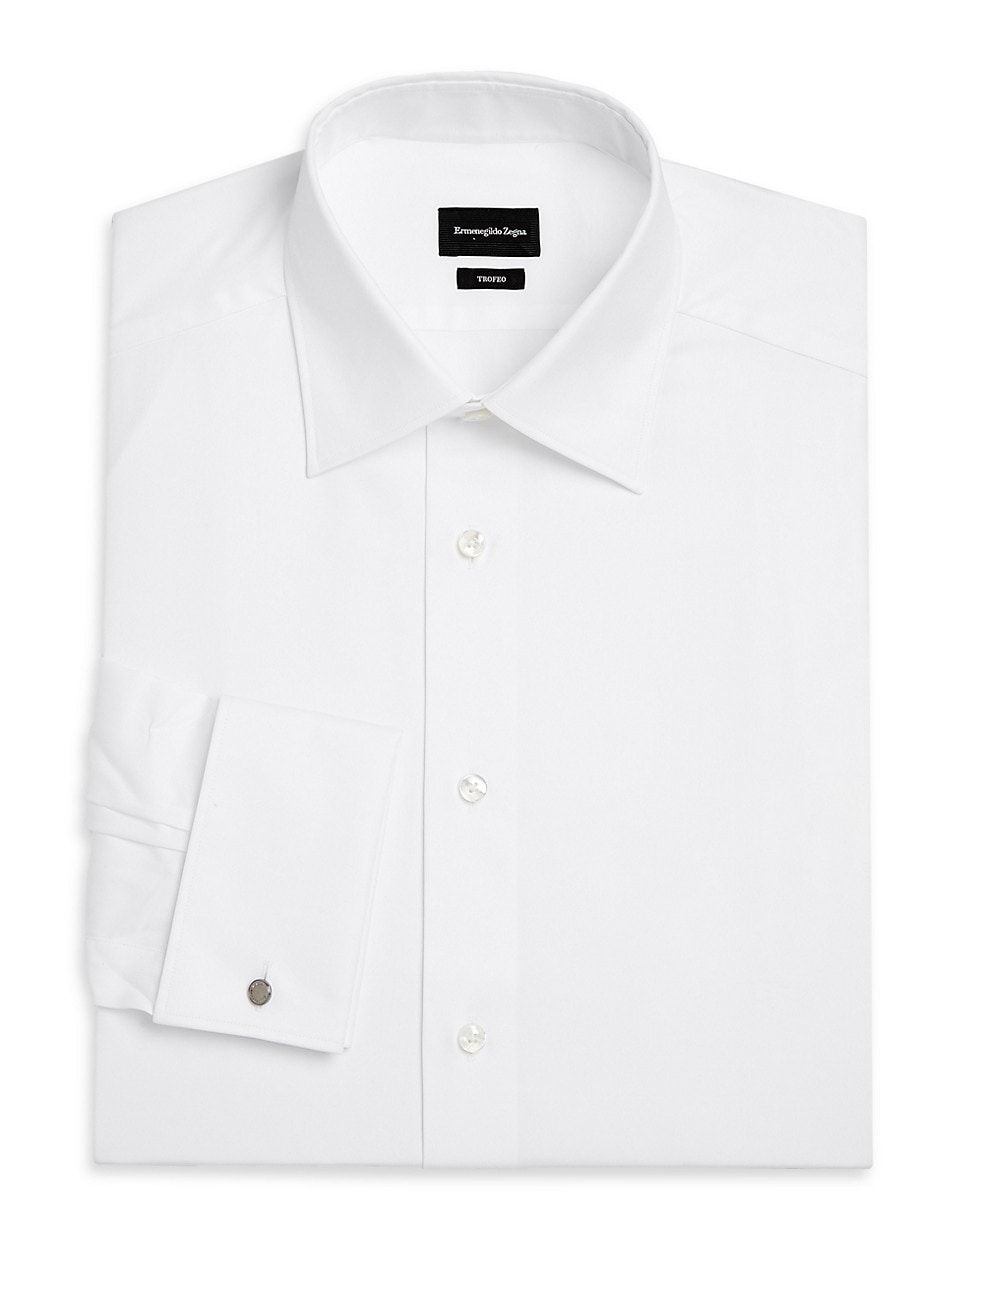 15 Best White Dress Shirts for Men 2022